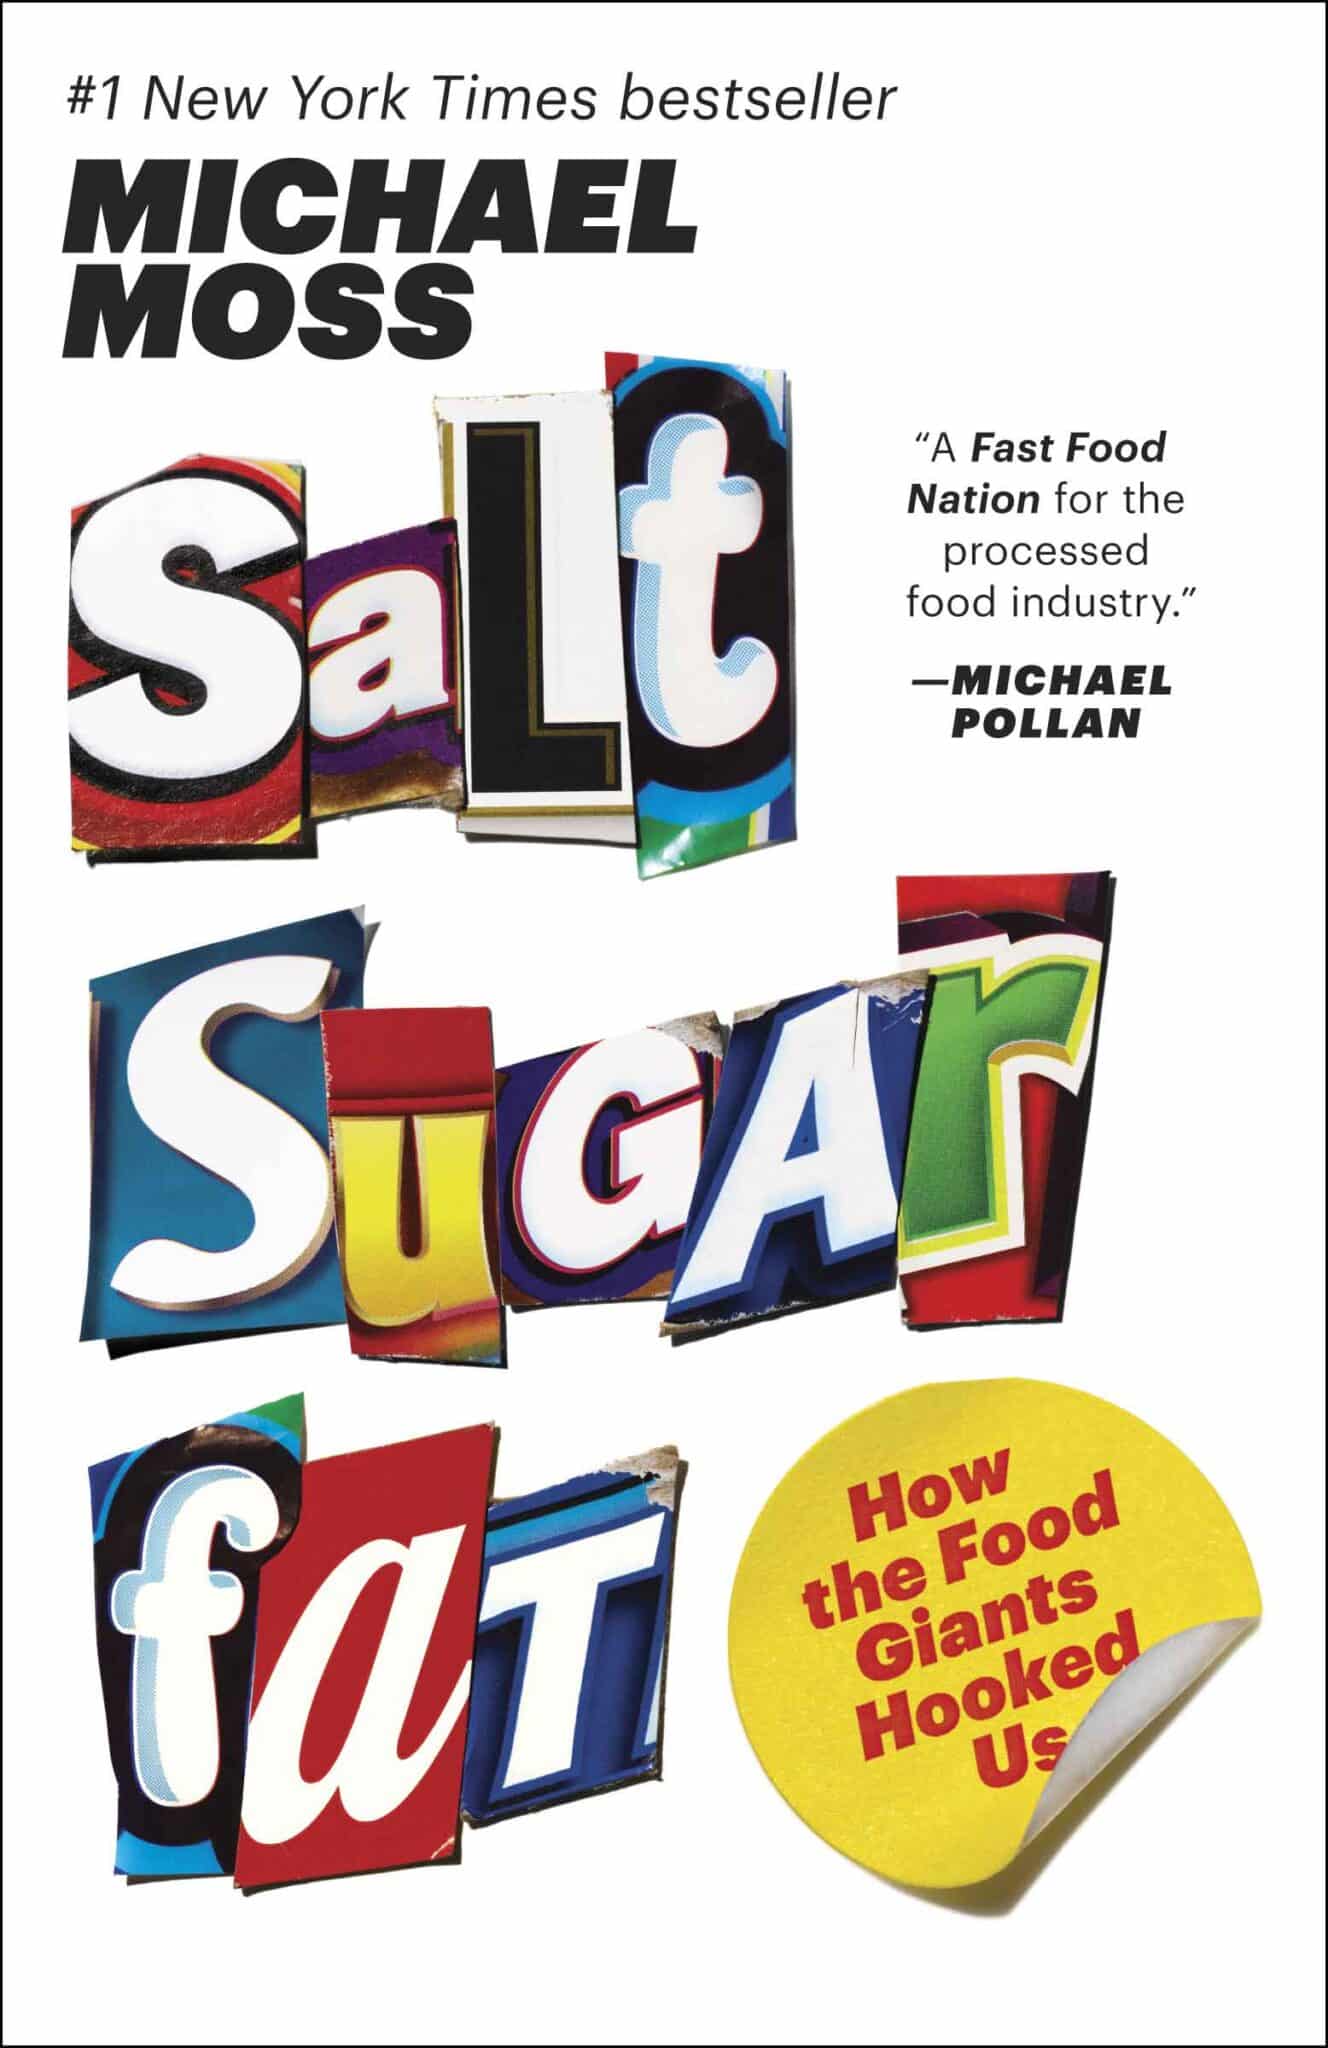 Coperta carte Salt Sugar Fat